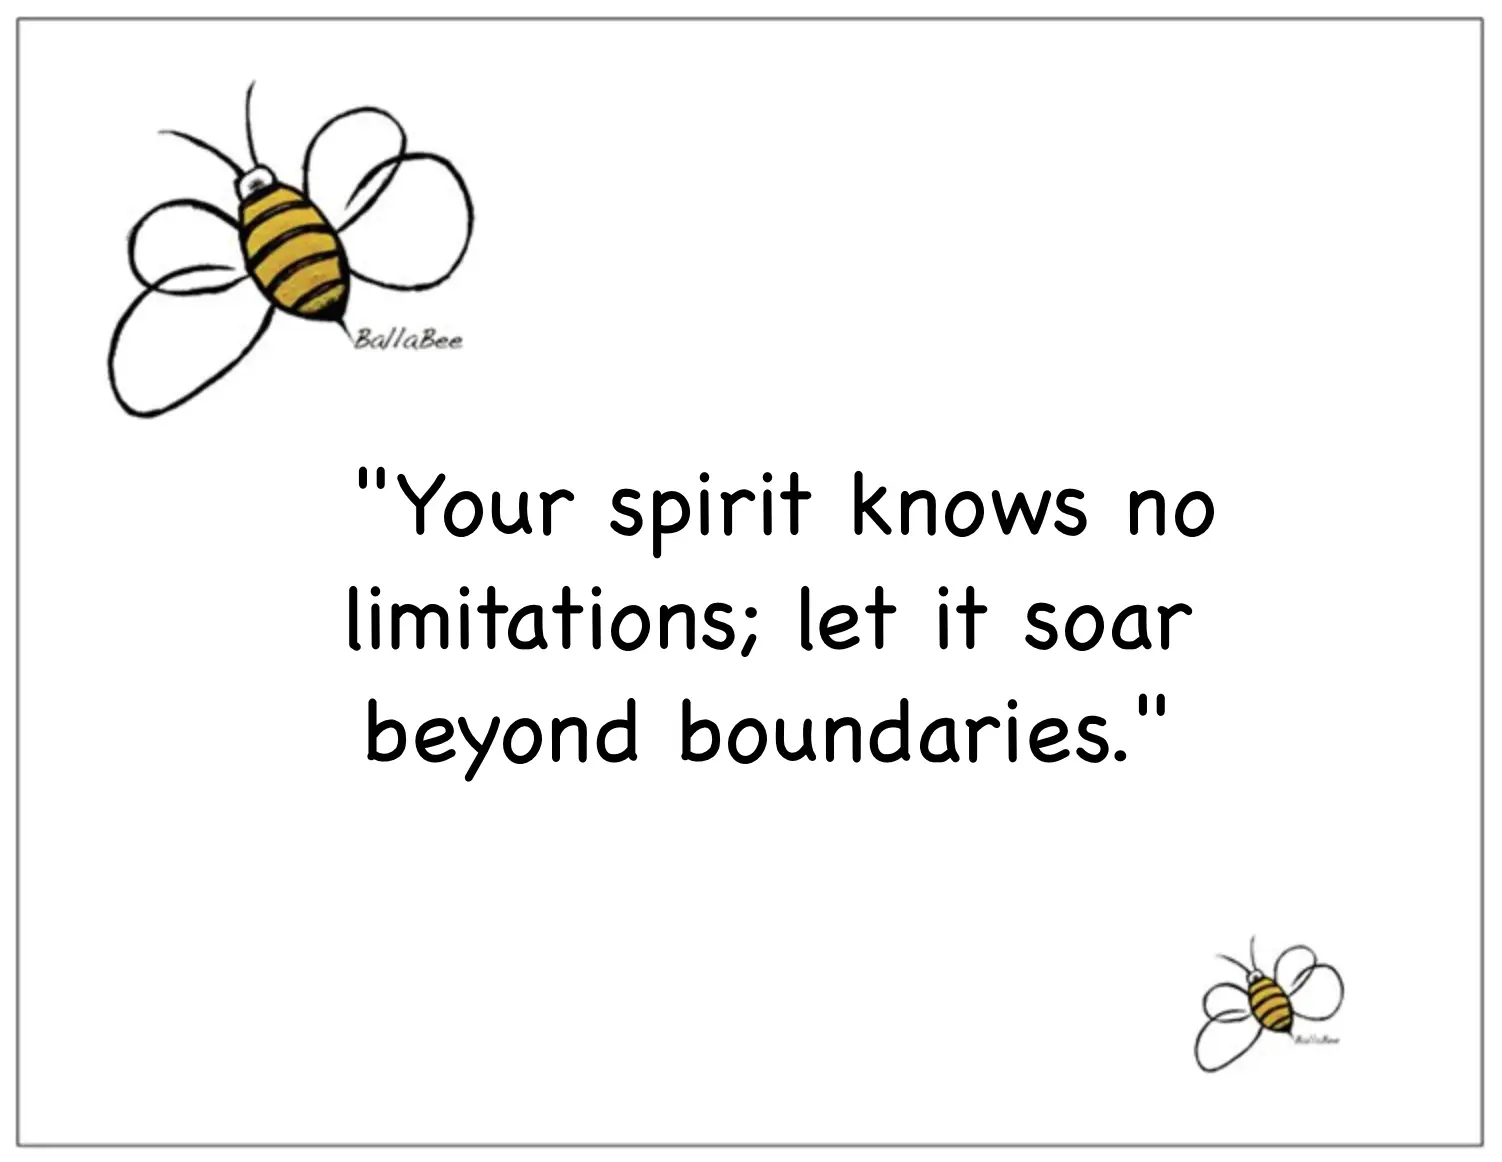 Your spirit knows no limitations; let it soar beyond boundaries